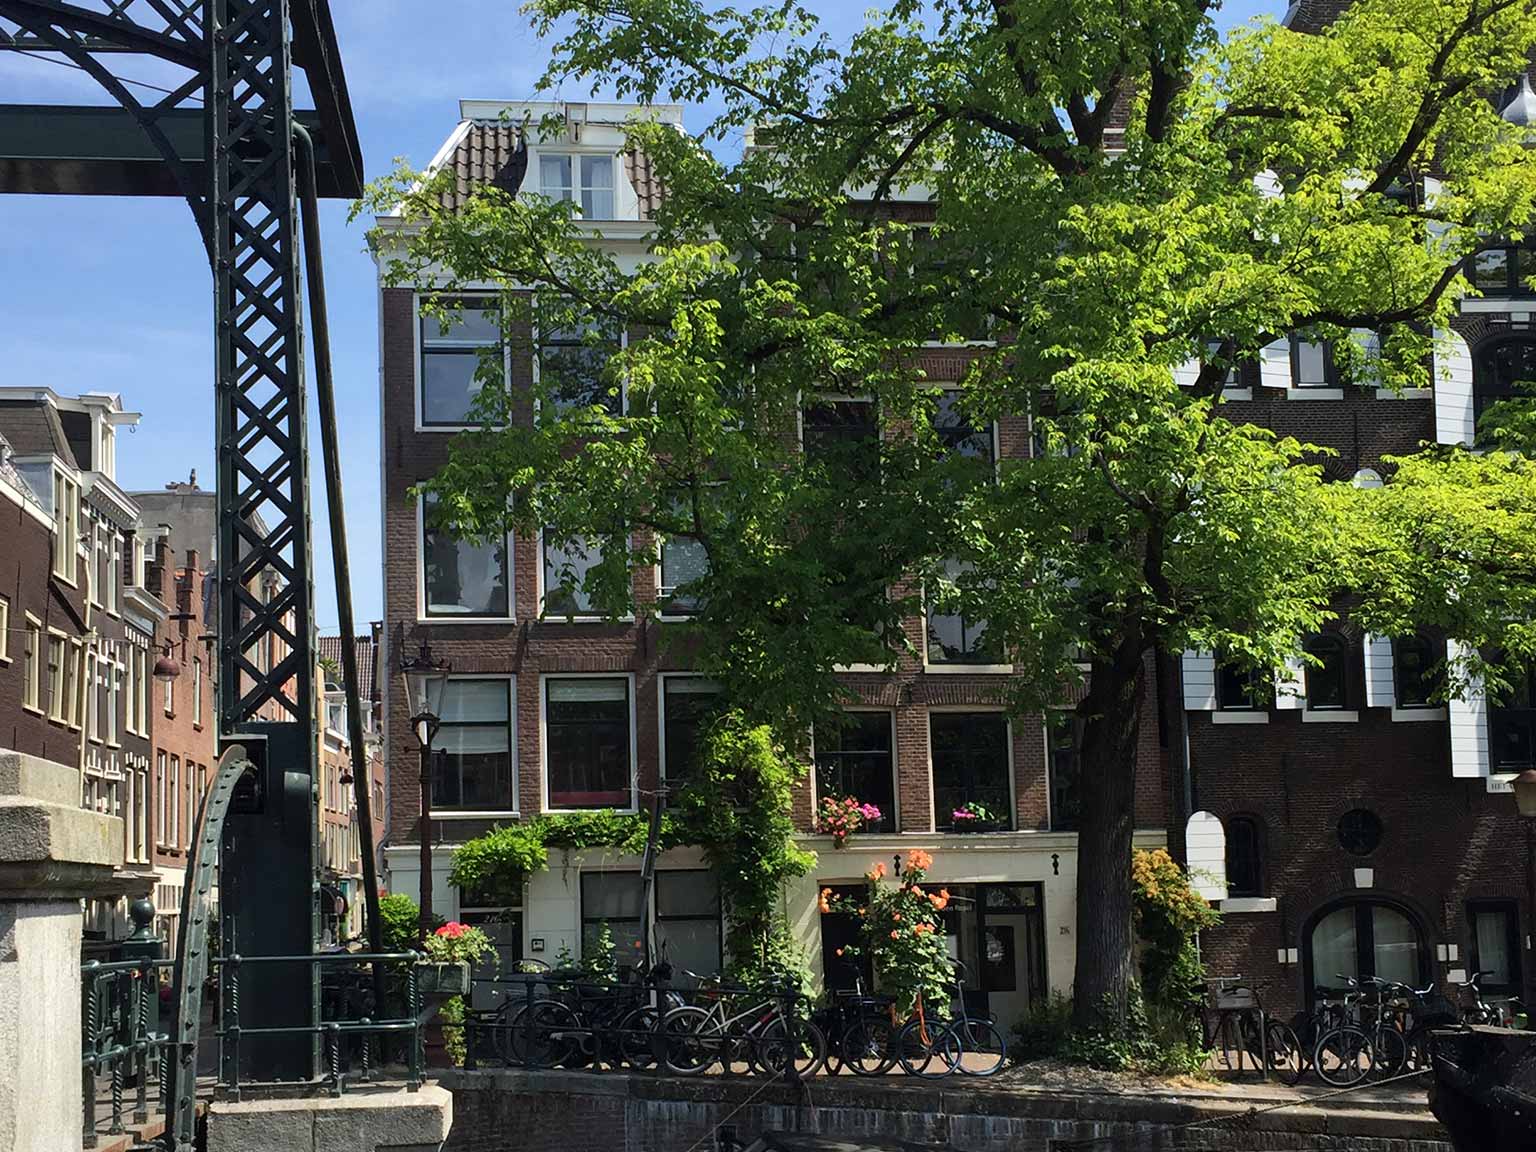 Oranjebrug on Brouwersgracht, Amsterdam, looking northeast towards Binnen Oranjestraat